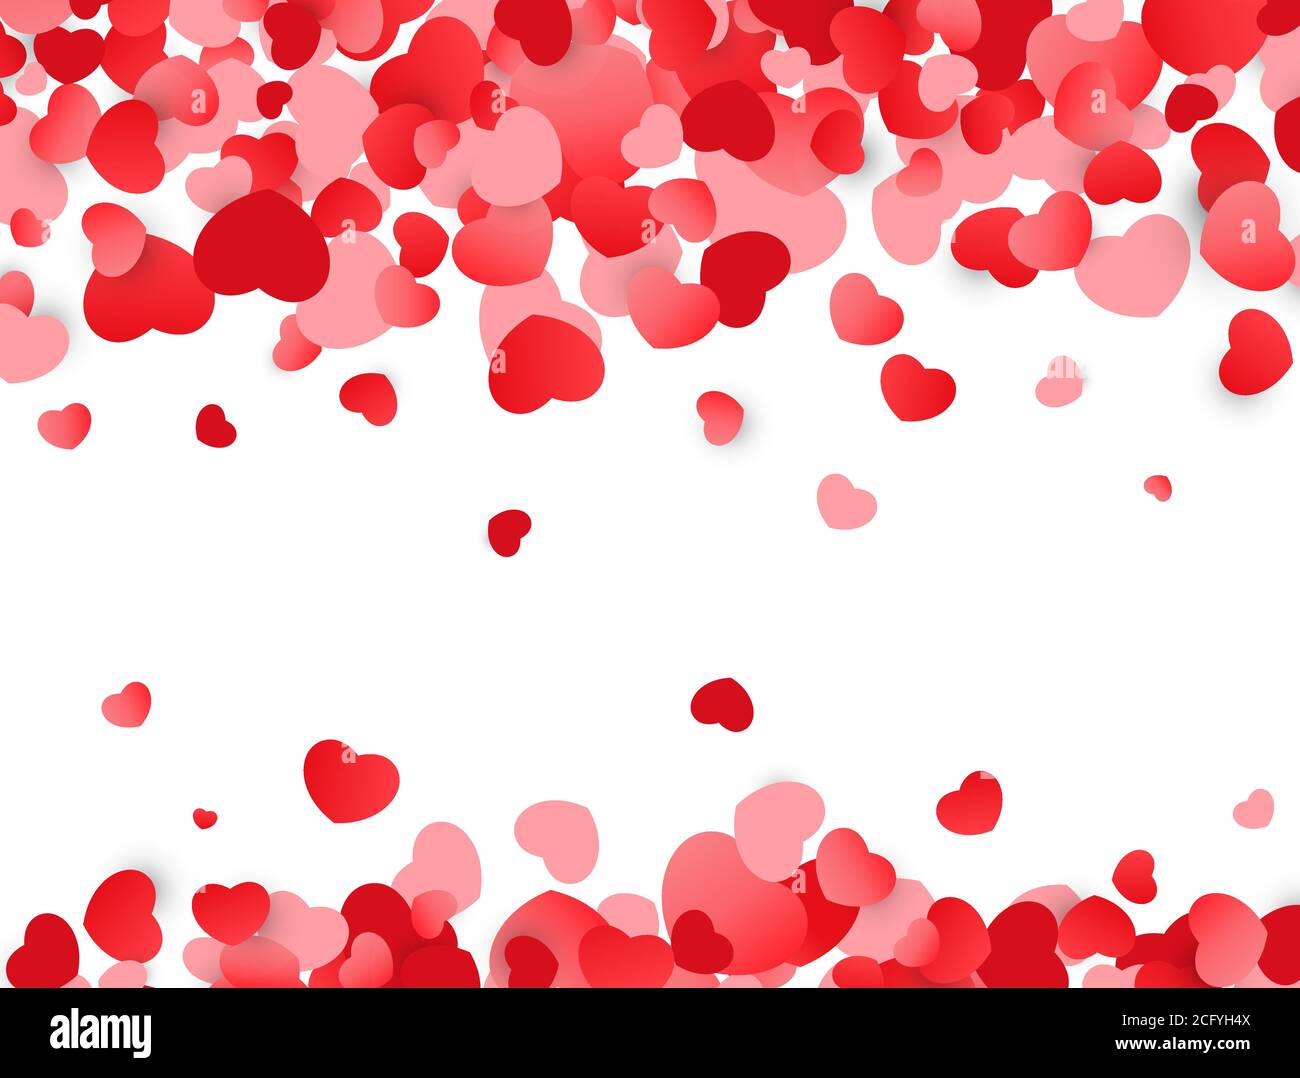 Liebe Hintergrund. Valentinstag Textur mit roten Herzen. Bunte Konfetti. Vektorgrafik Stock Vektor